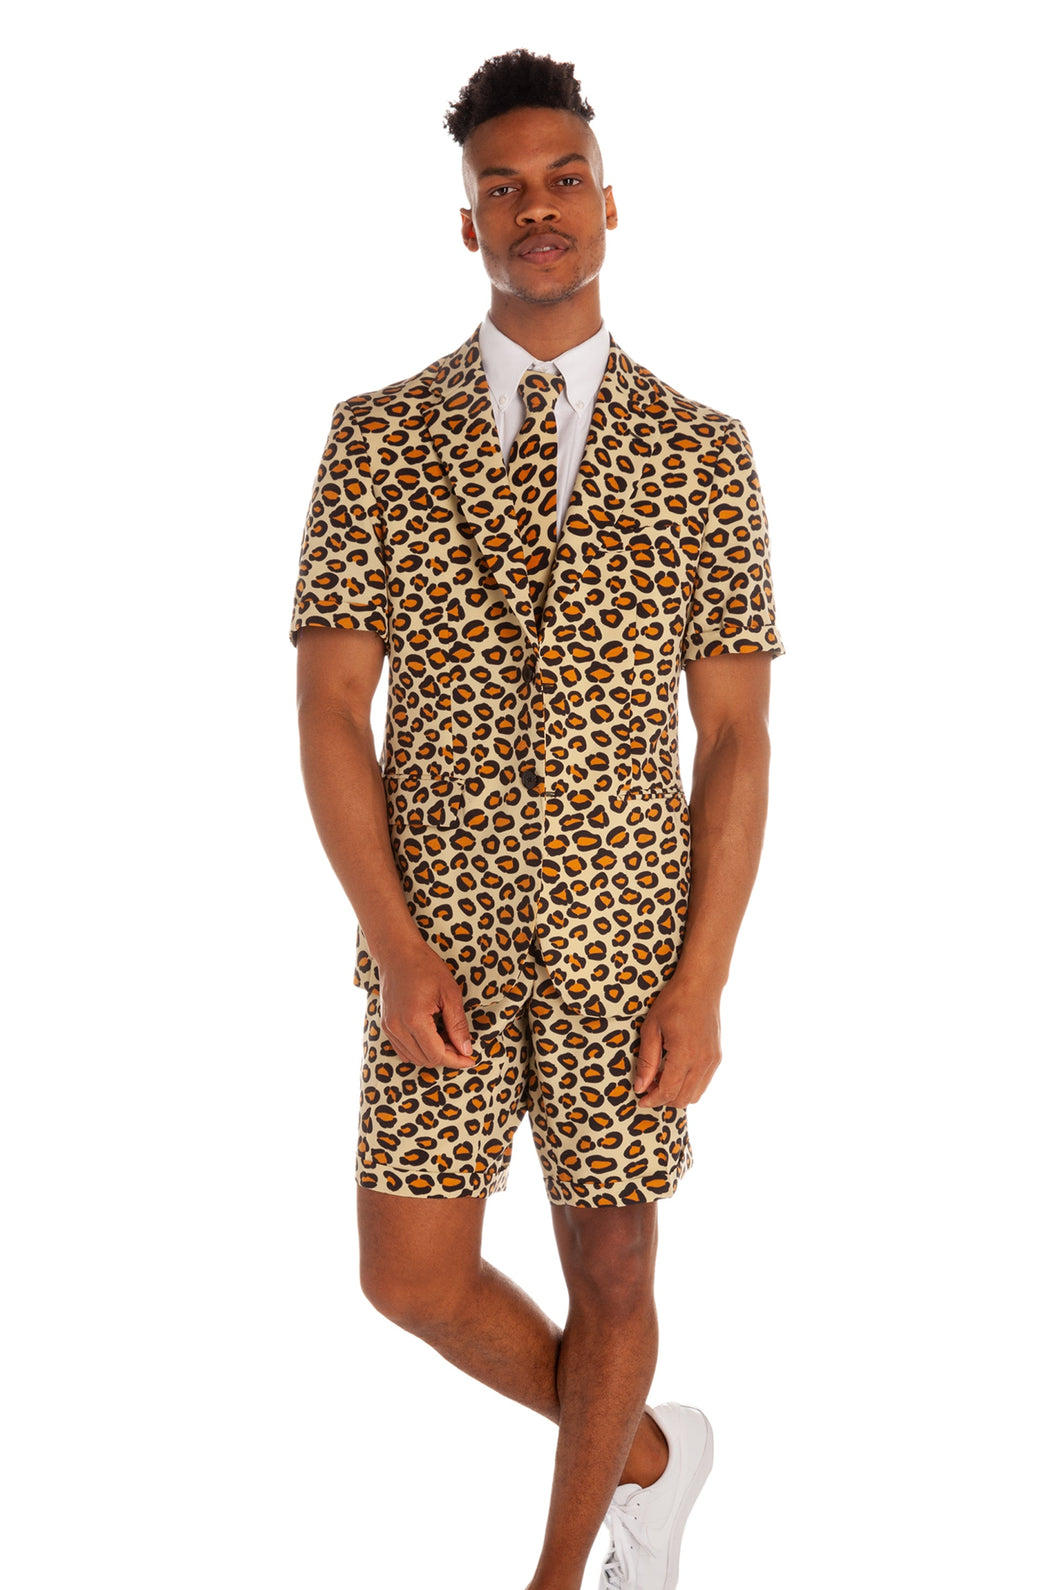 jungle cat summer suit for men